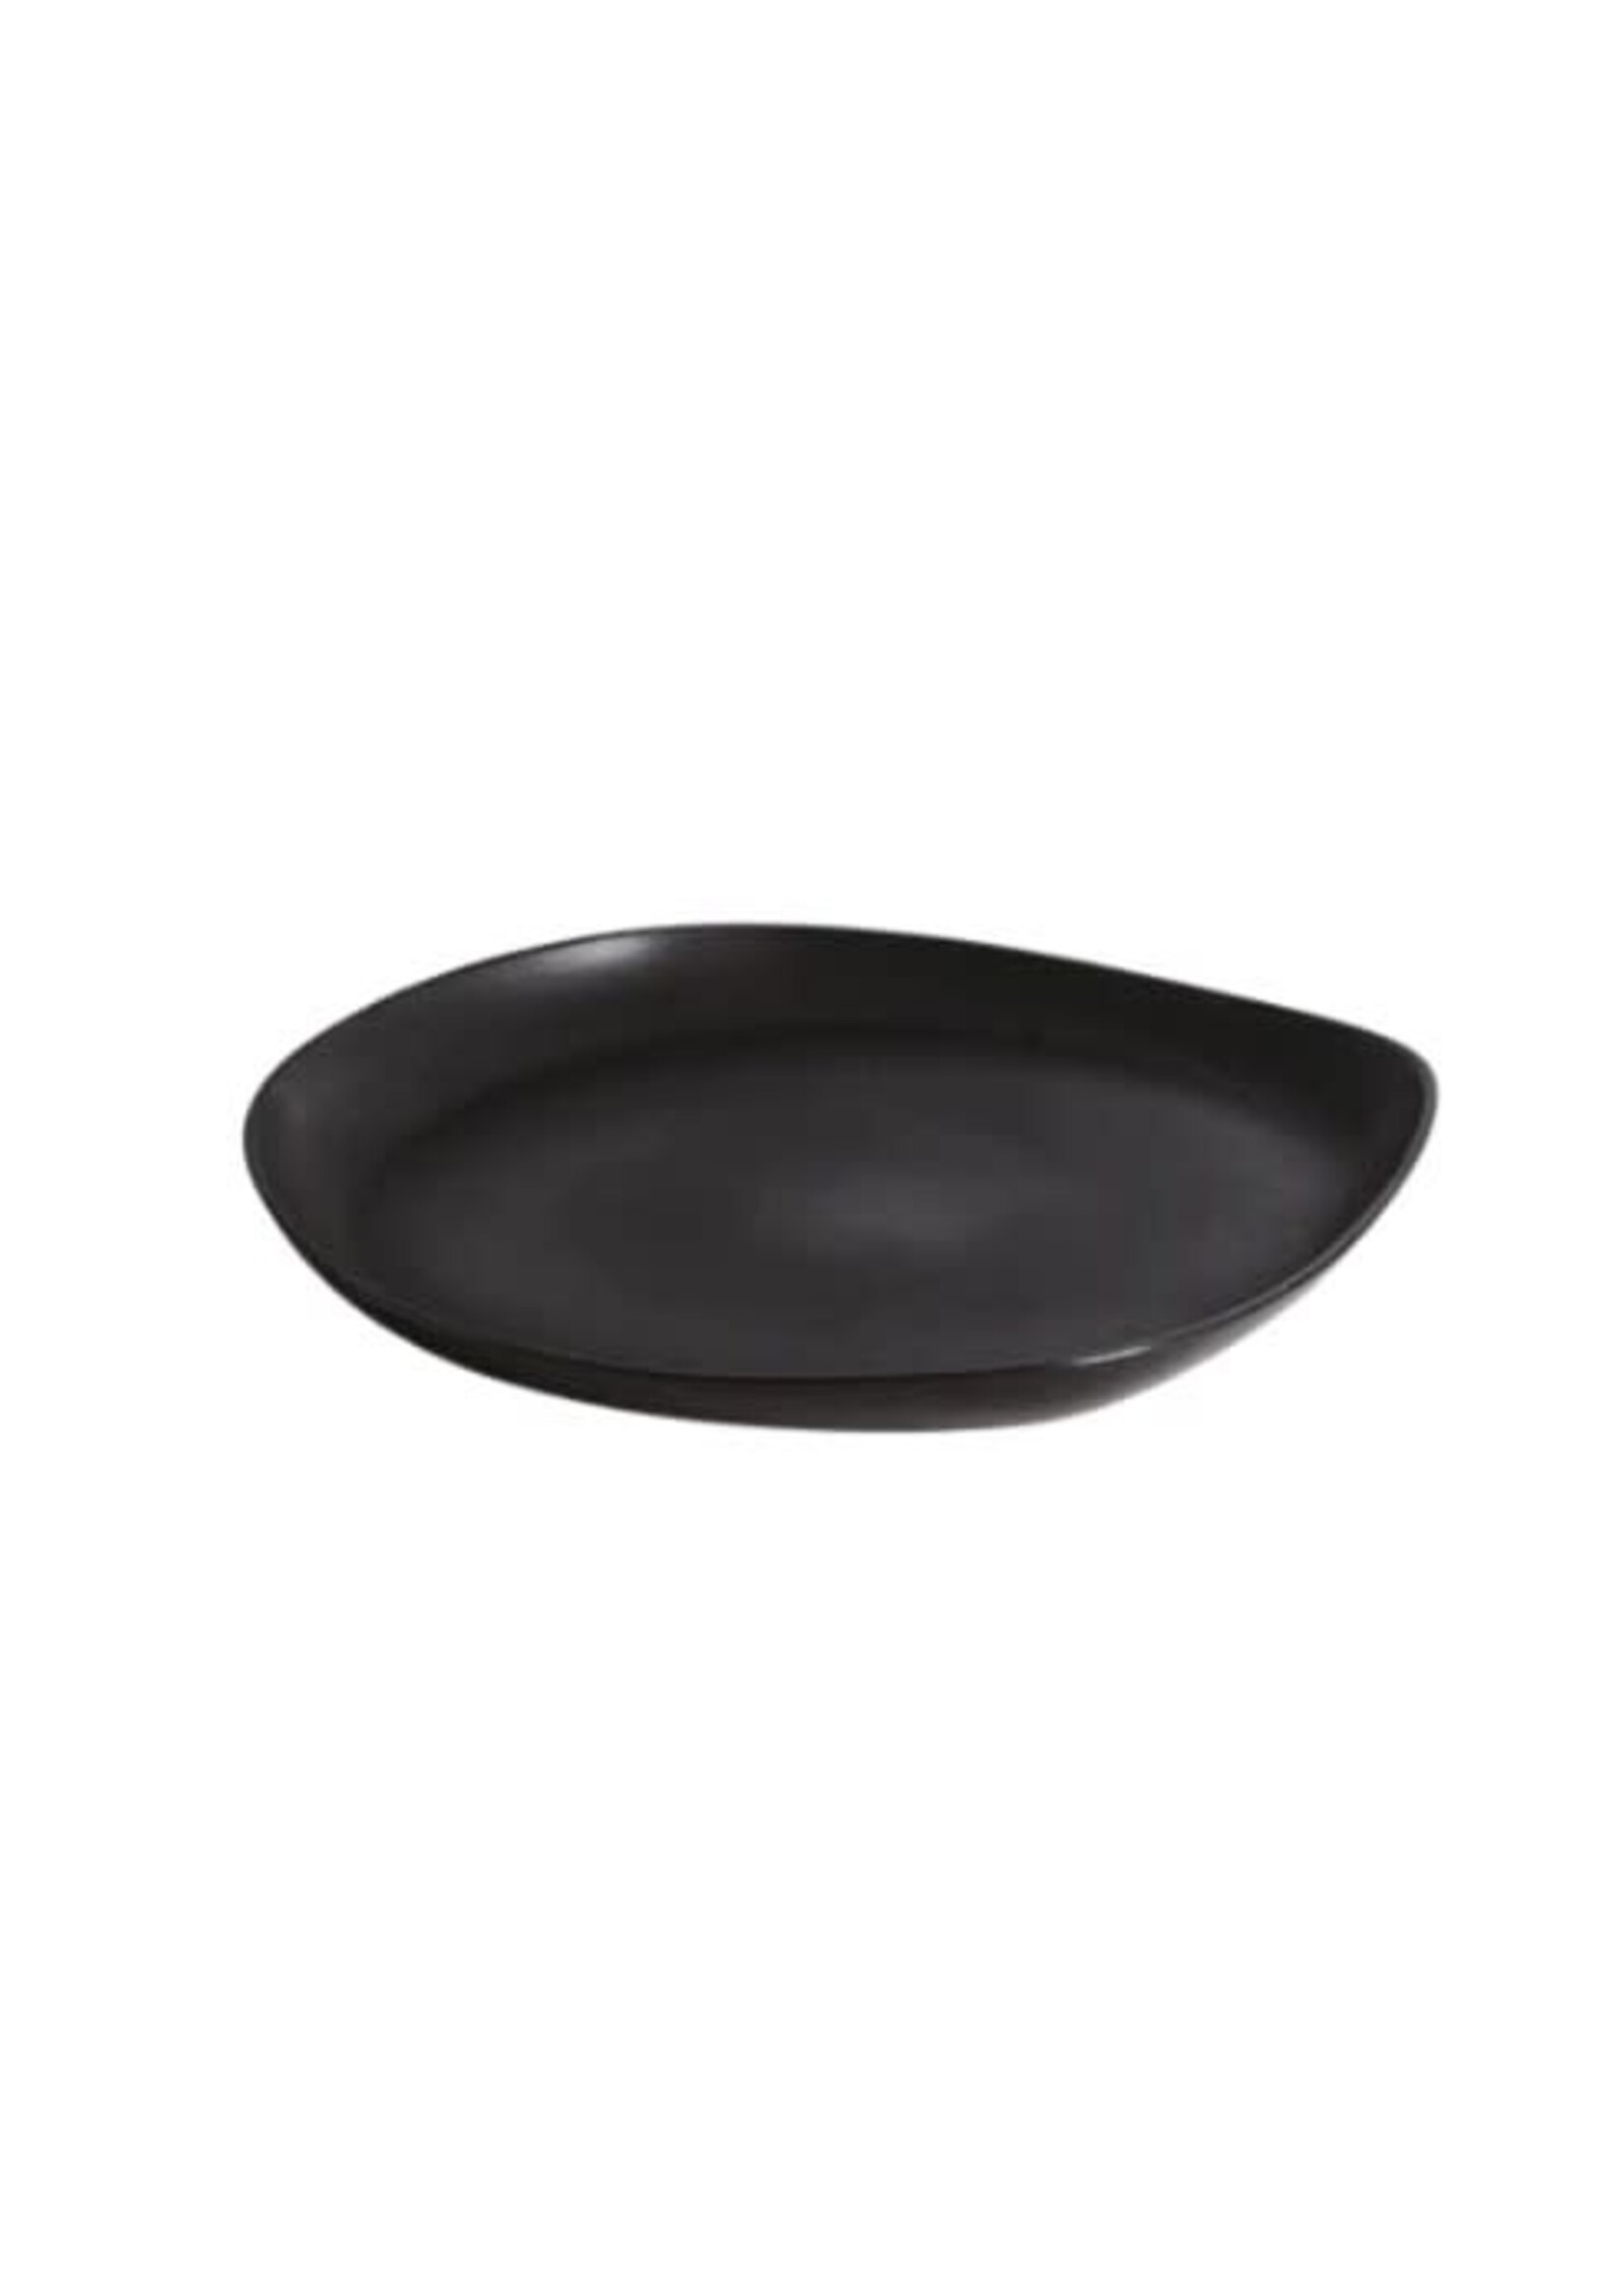 Stoneware Round Serving Platter- Black Matte